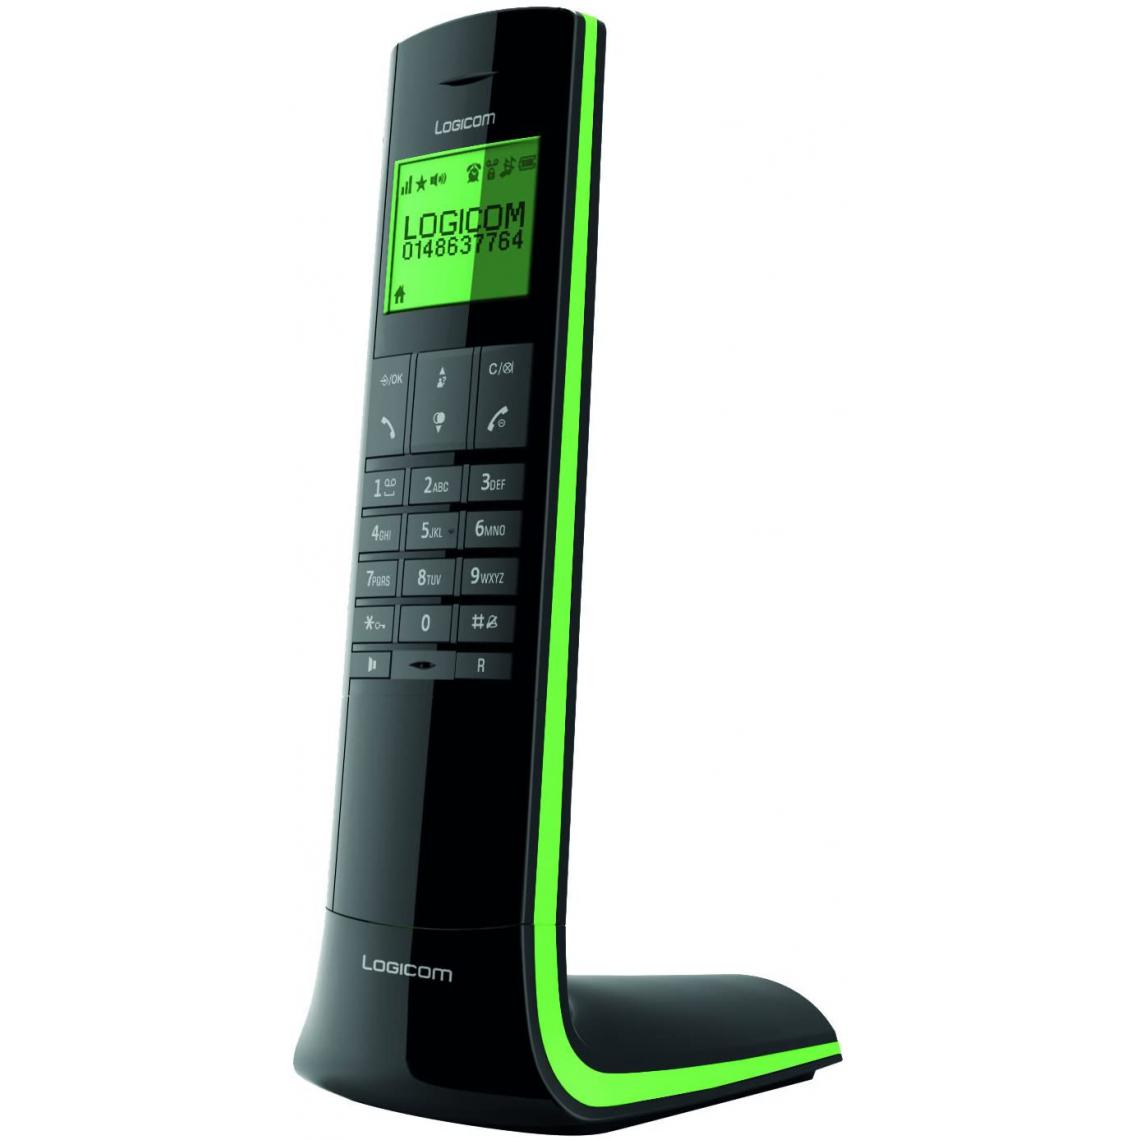 Logicom - telephone fixe sans Fil sans répondeur noir vert - Téléphone fixe filaire